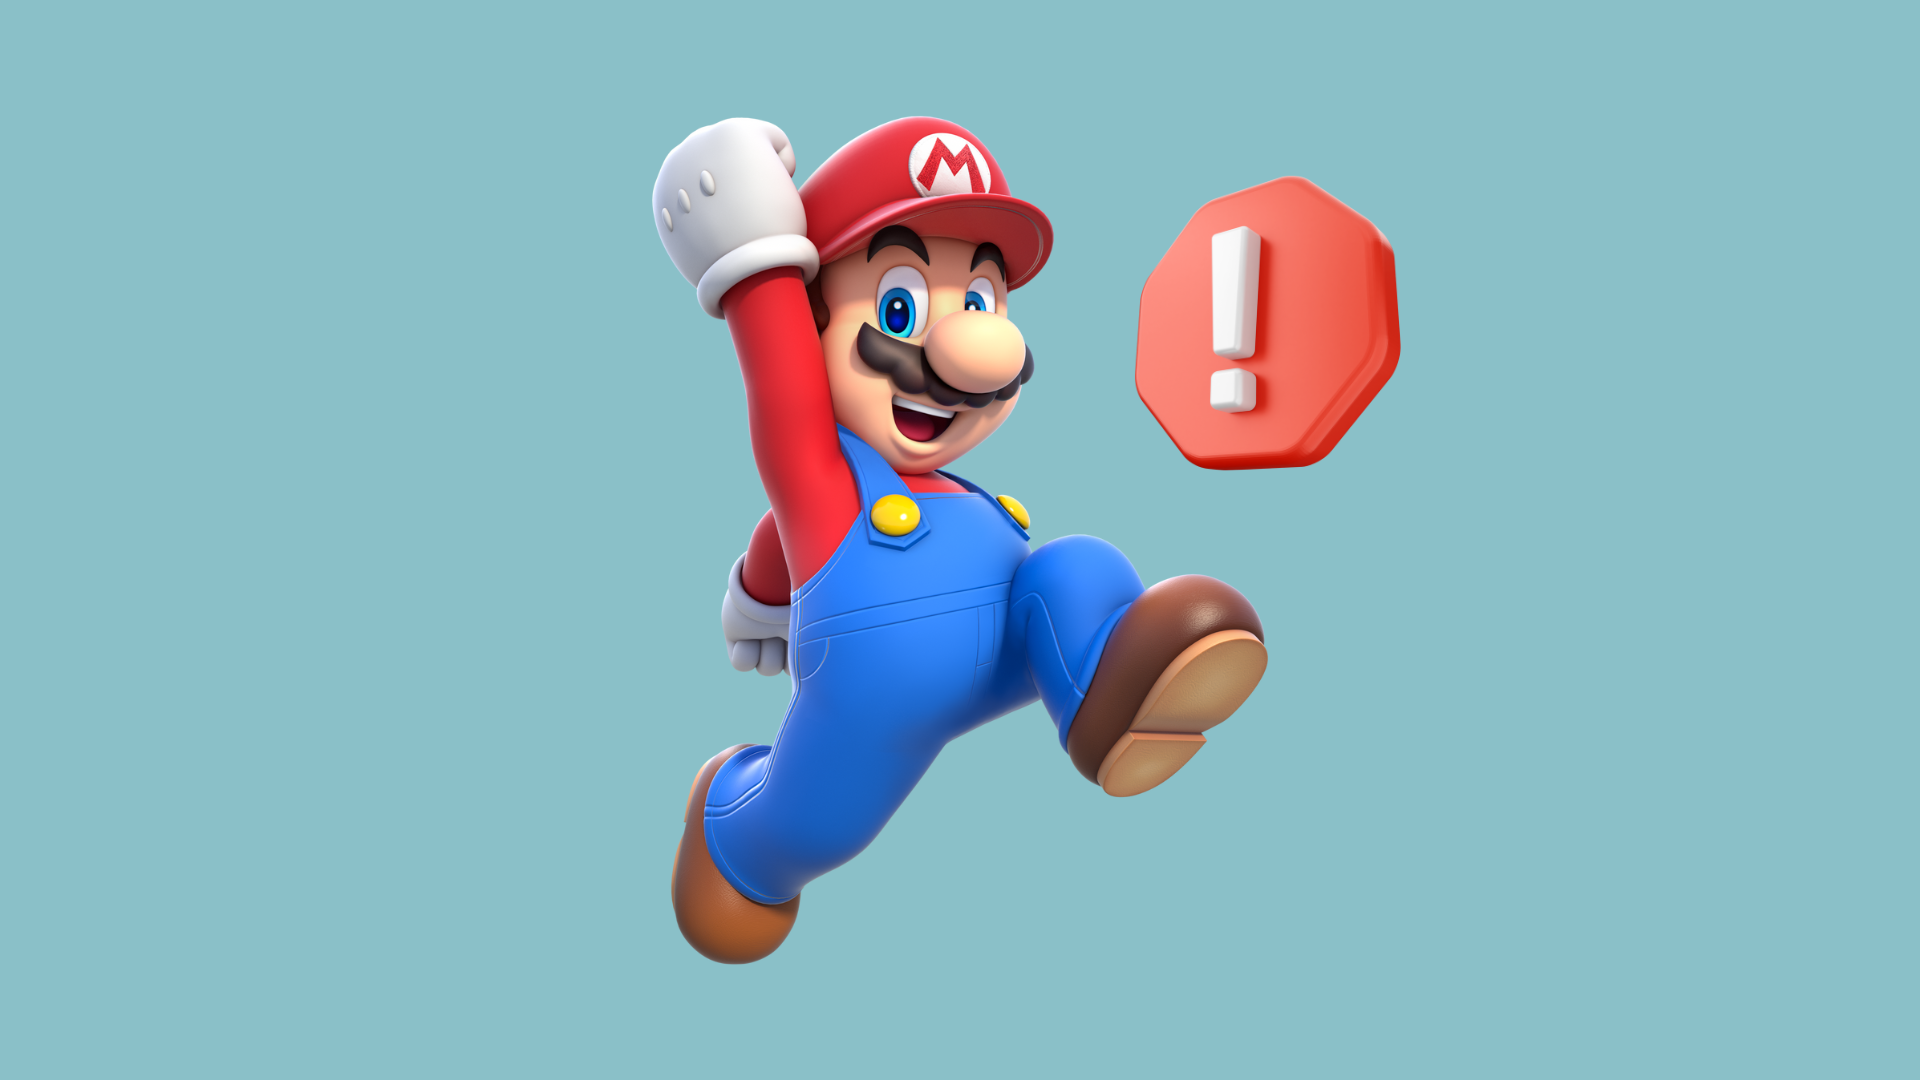 Mario Forever: Juego Gratuito, ¿Nido de Troyanos y Mineros?